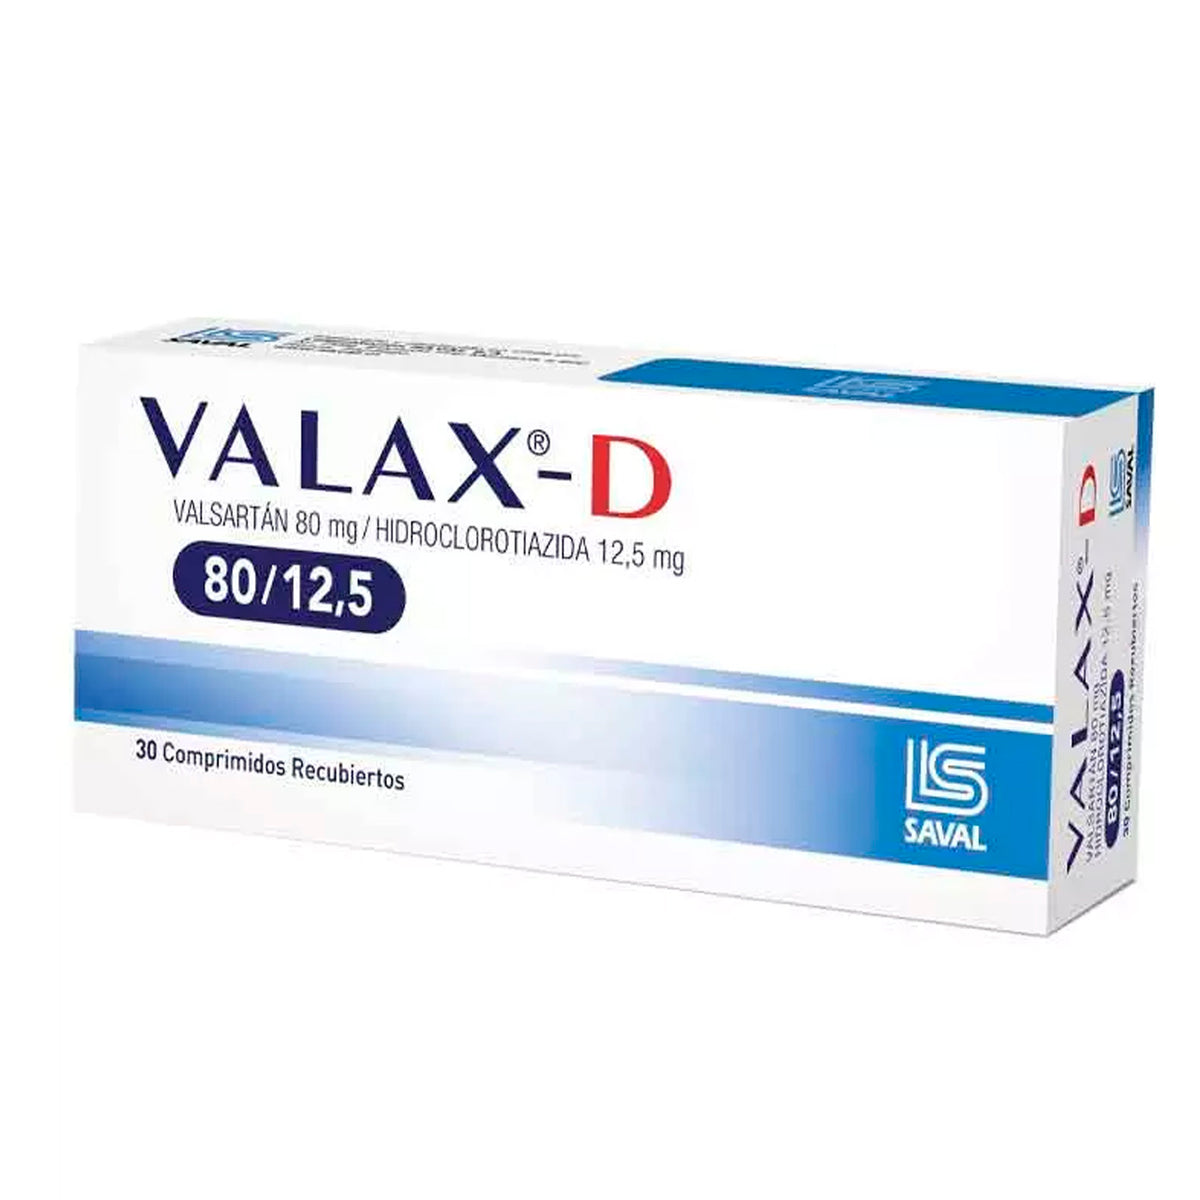 Valax-D Comprimidos Recubiertos 80/12,5